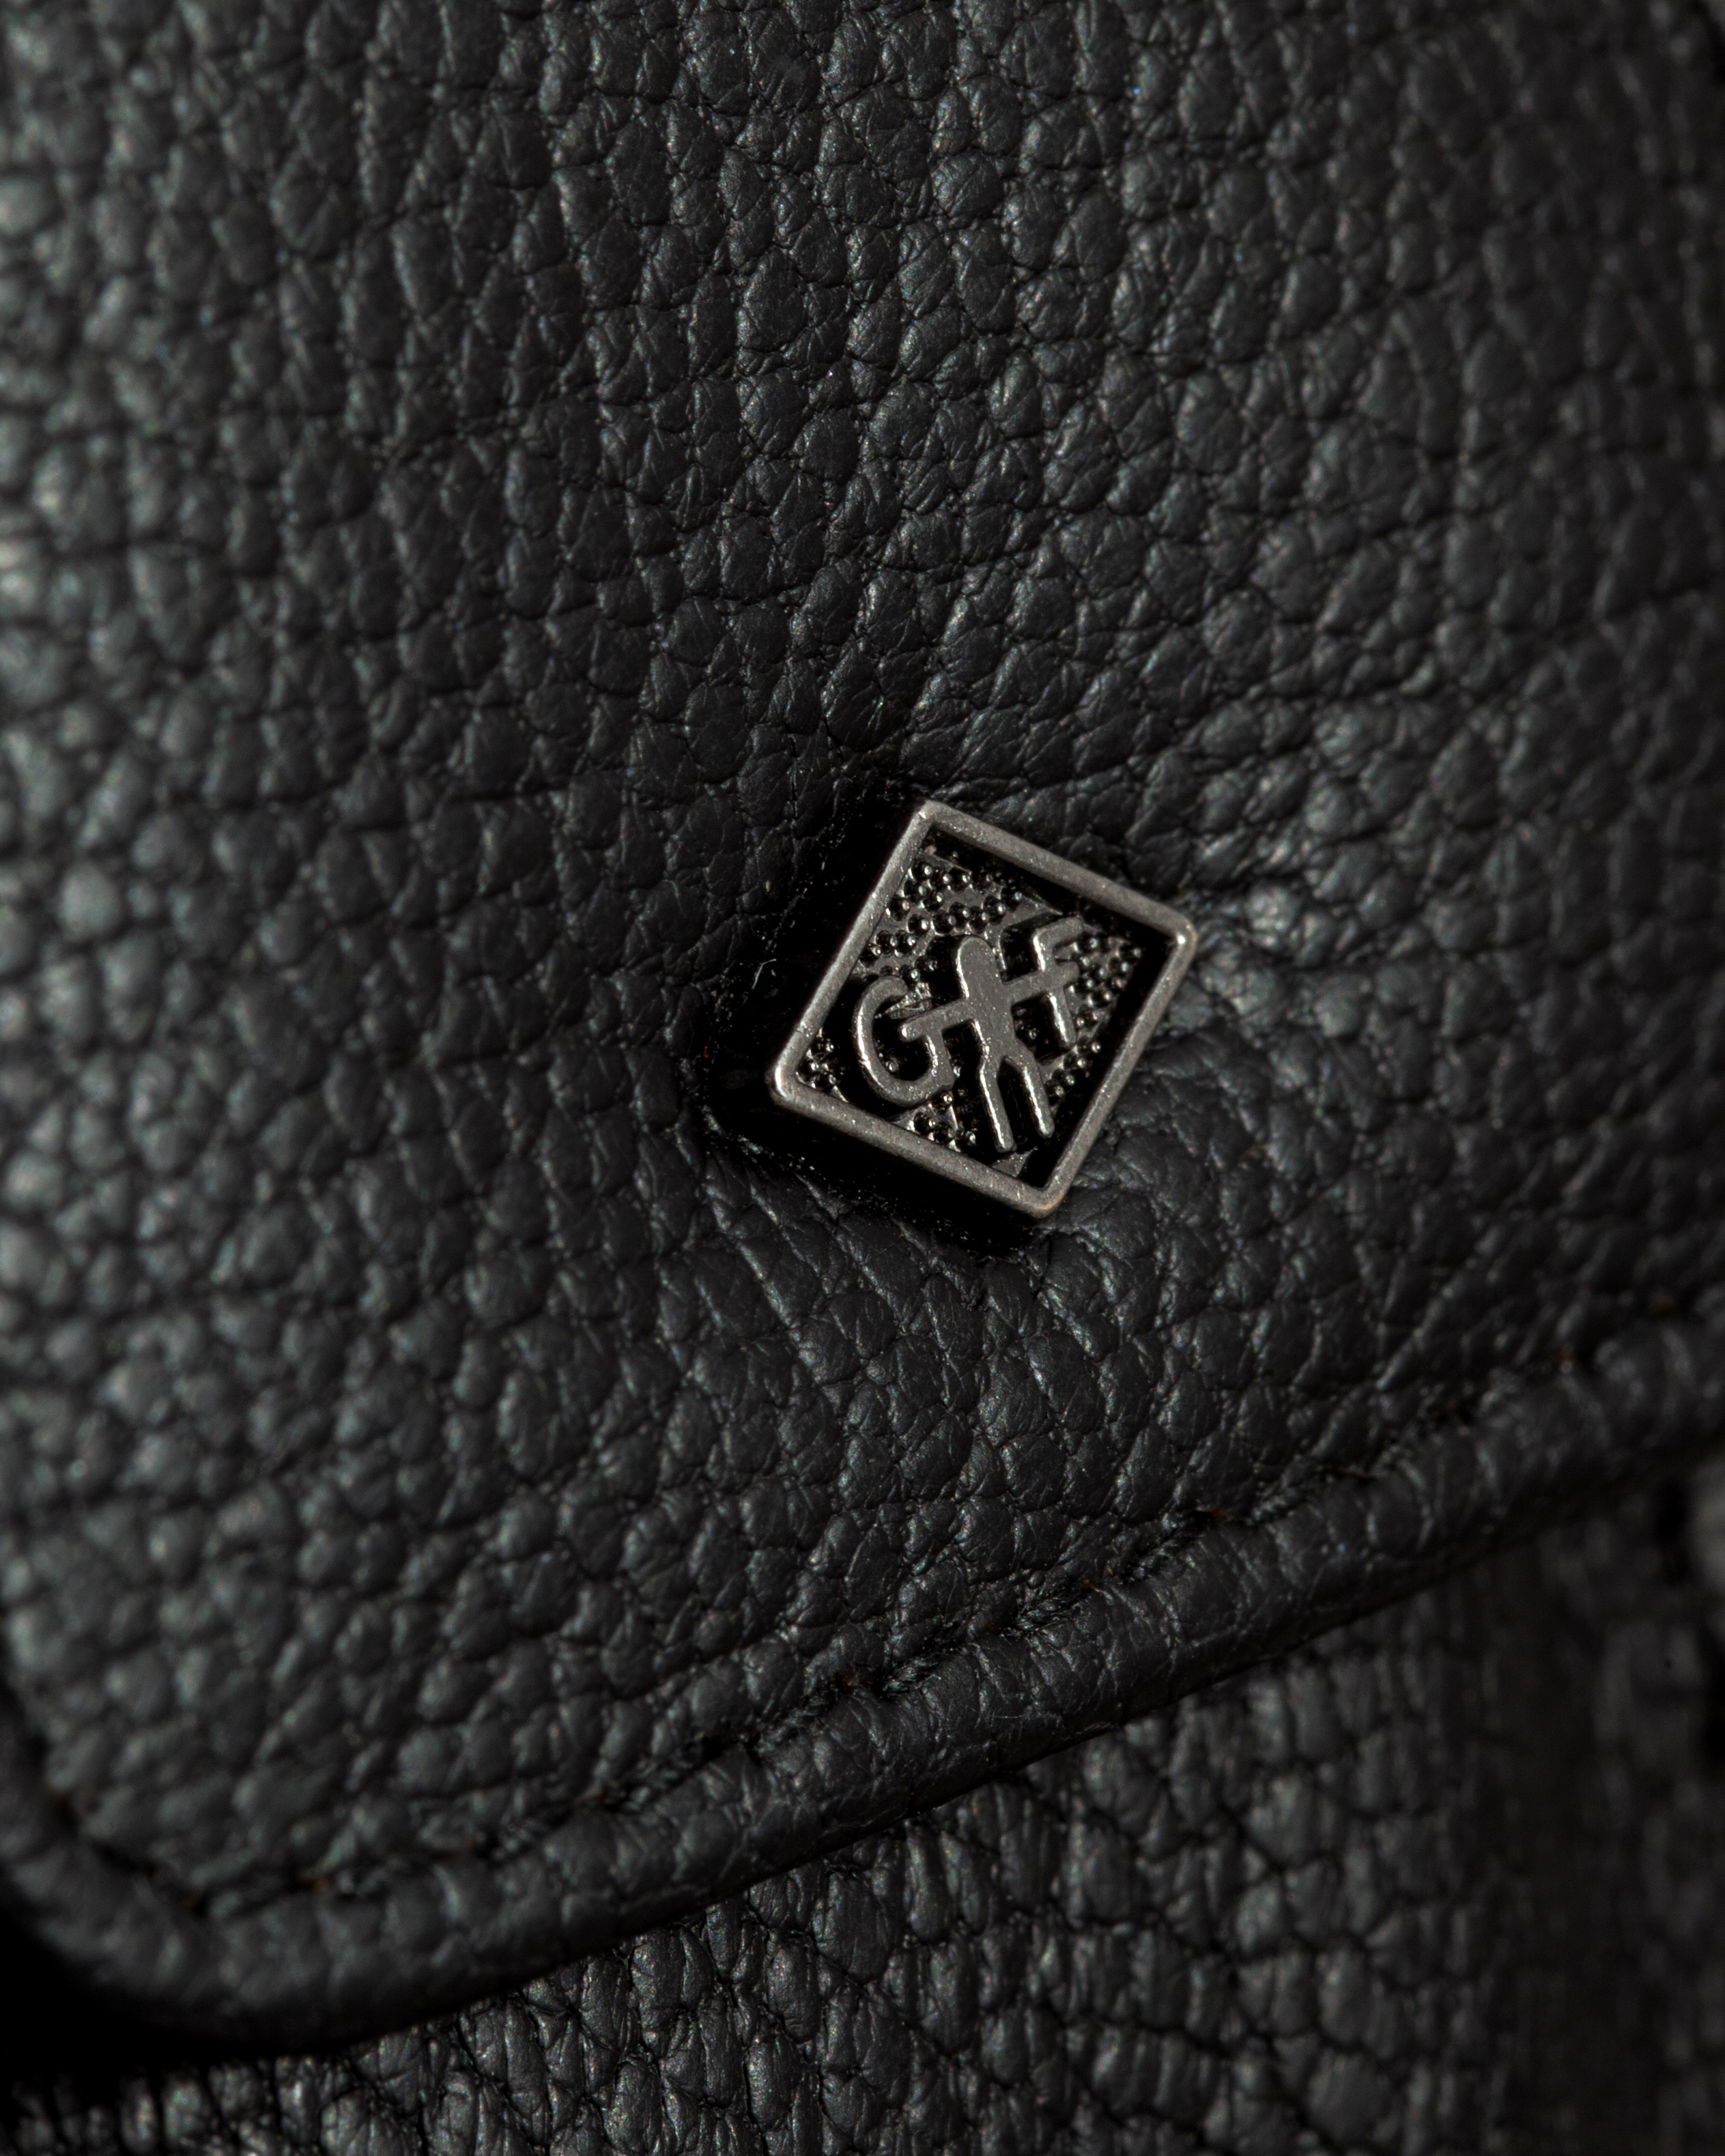 G&F Timor® 3-teiliges Manikürset schwarzes, natürlich gegerbtes Leder